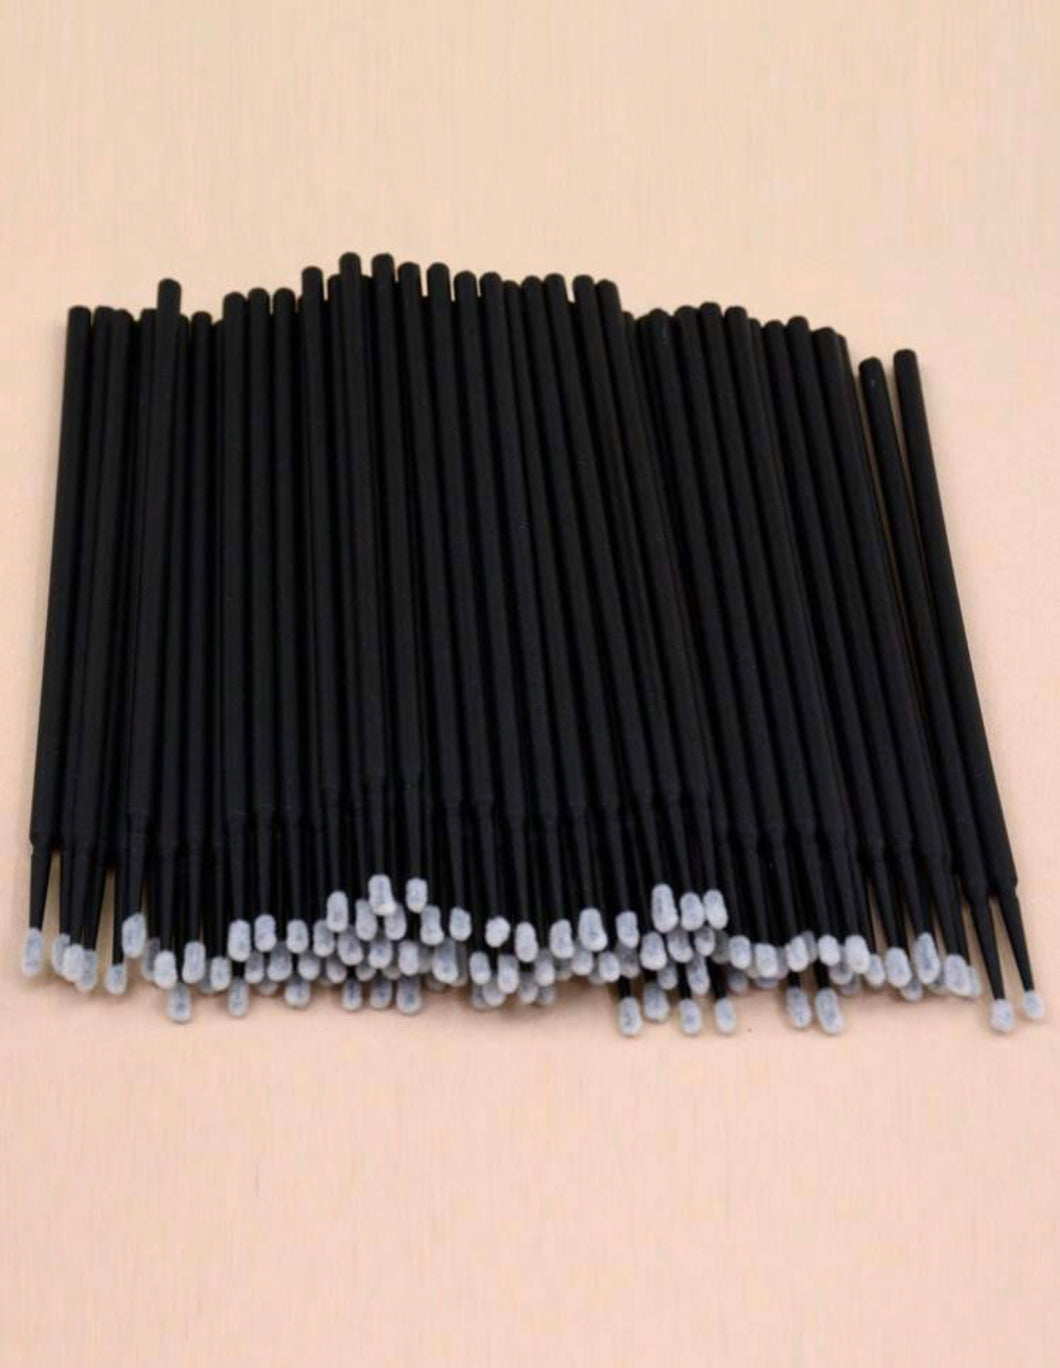 Black Micro fibre applicators 100pcs